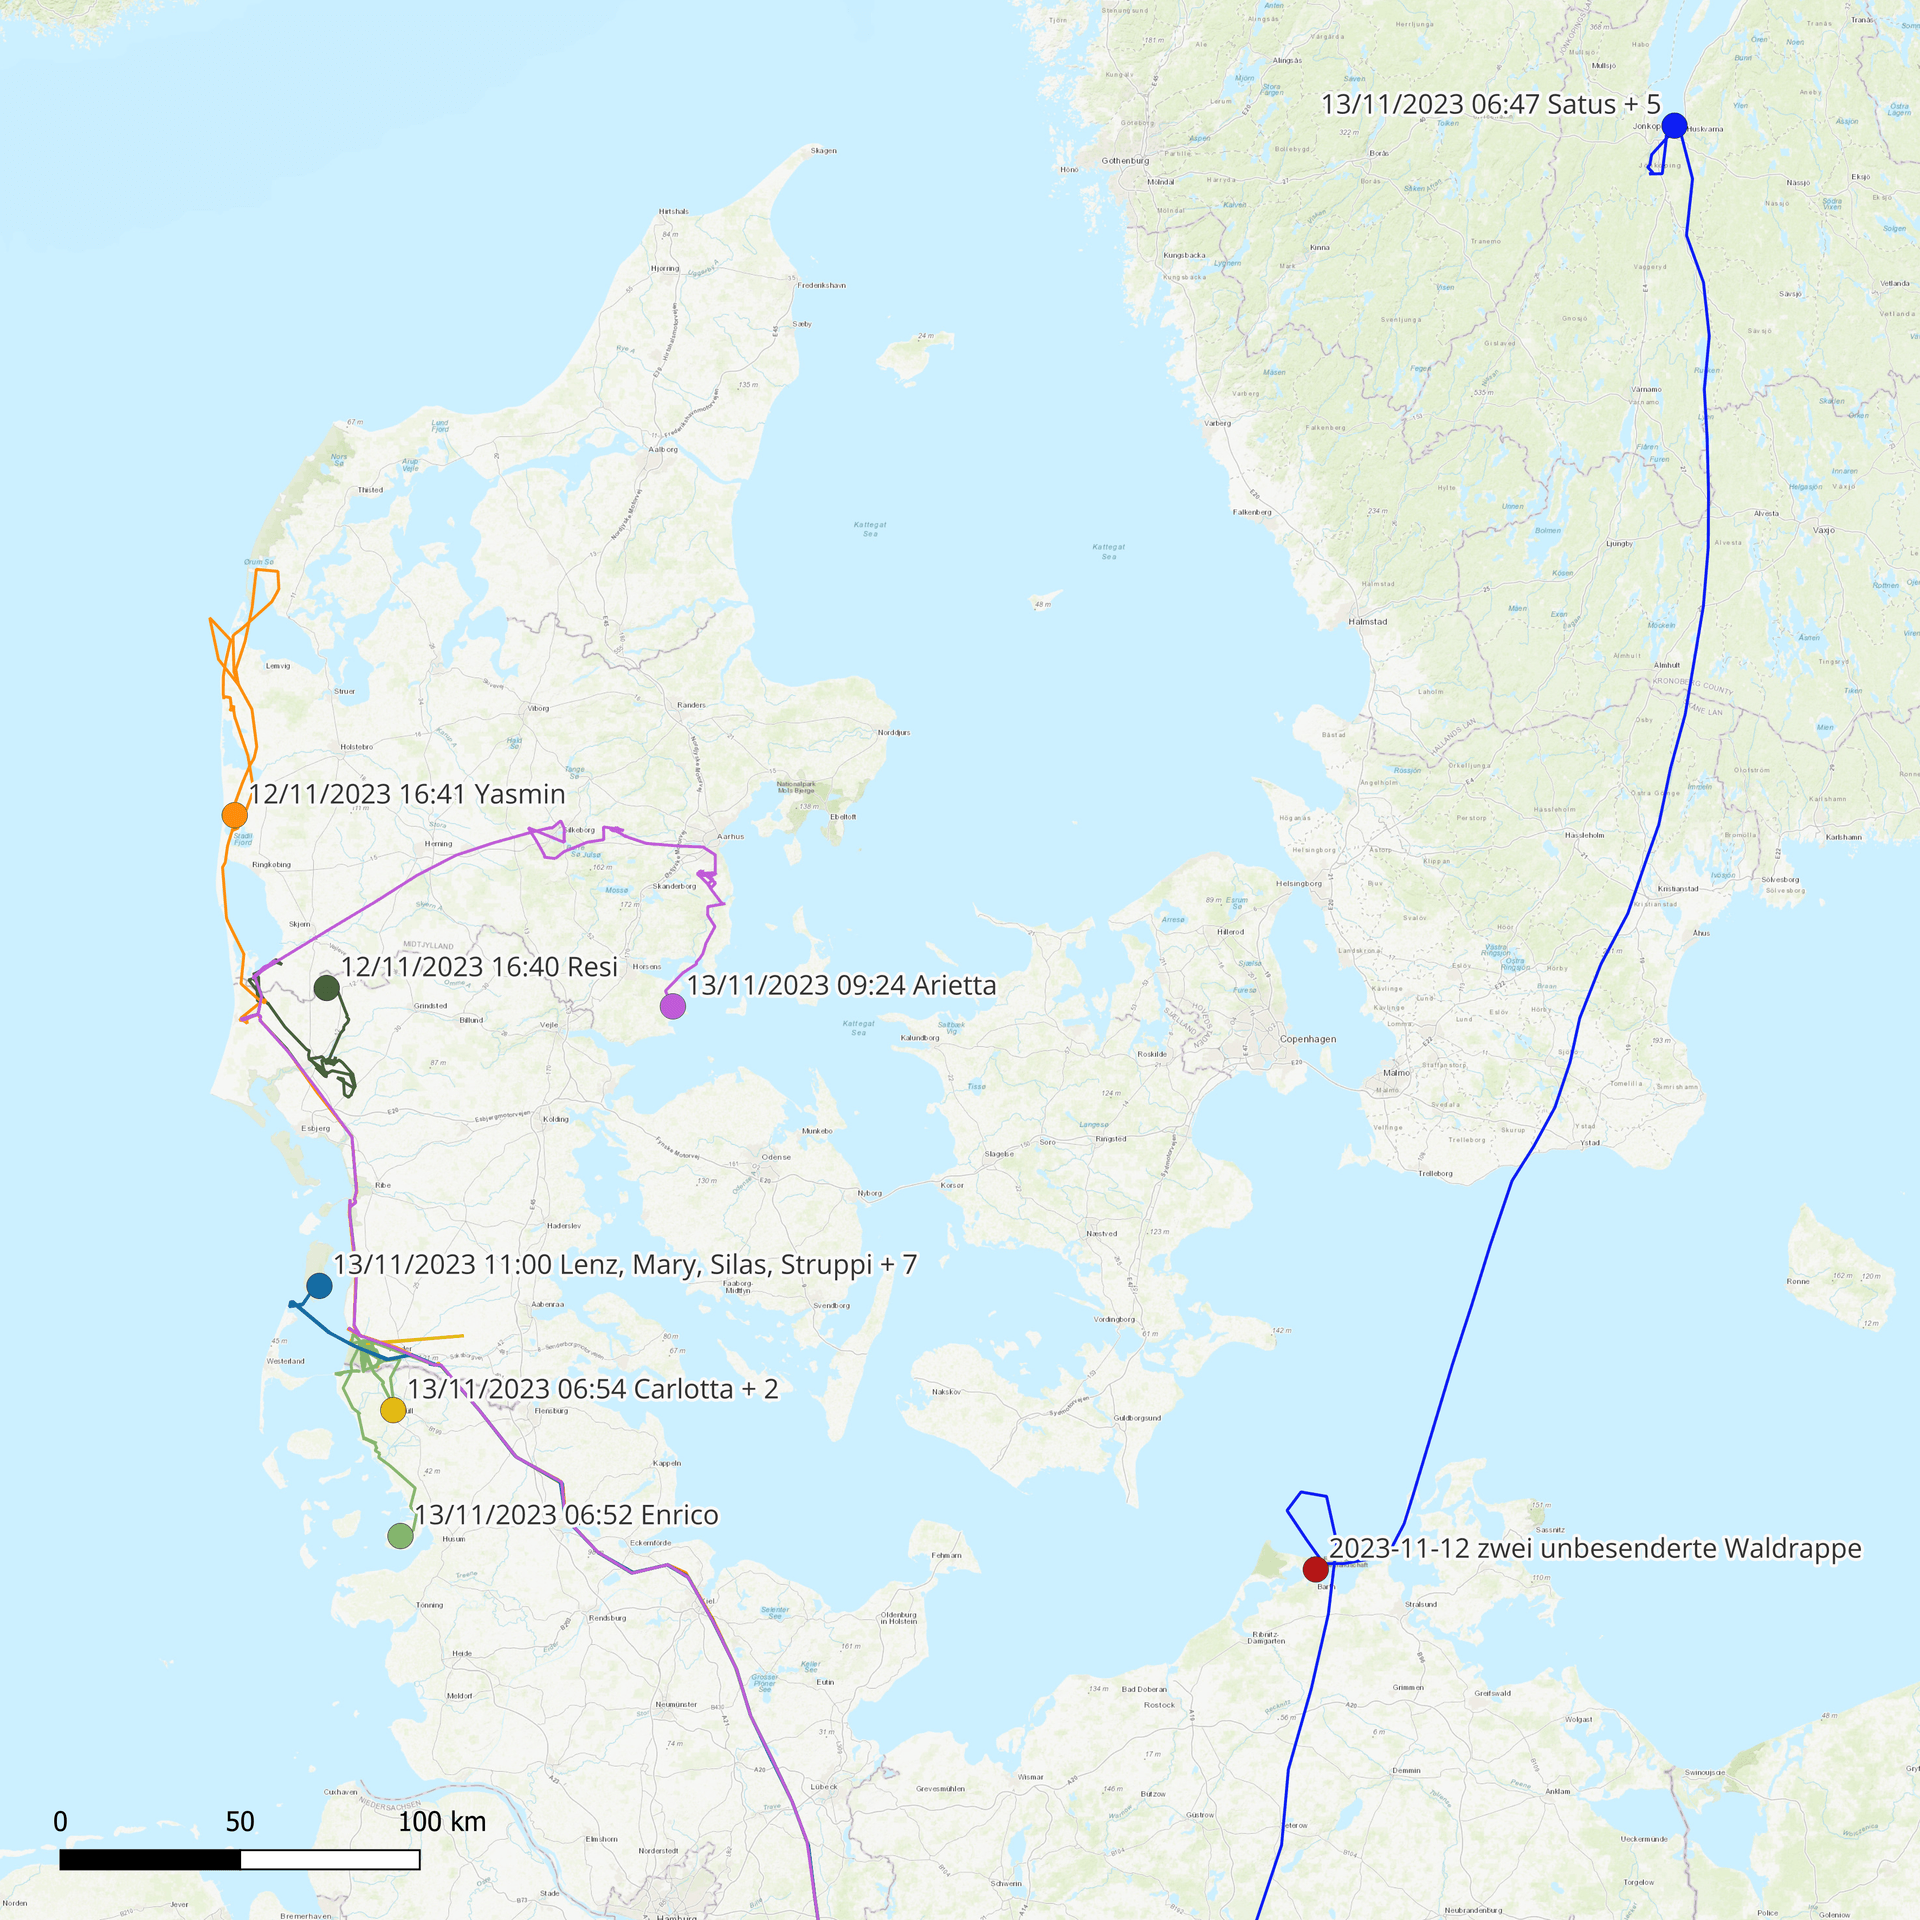 Flugrouten der Waldrappe: Vögelchen Yasmin stromert durch Dänemark, Satus ist bis nach Schweden vorgestoßen.